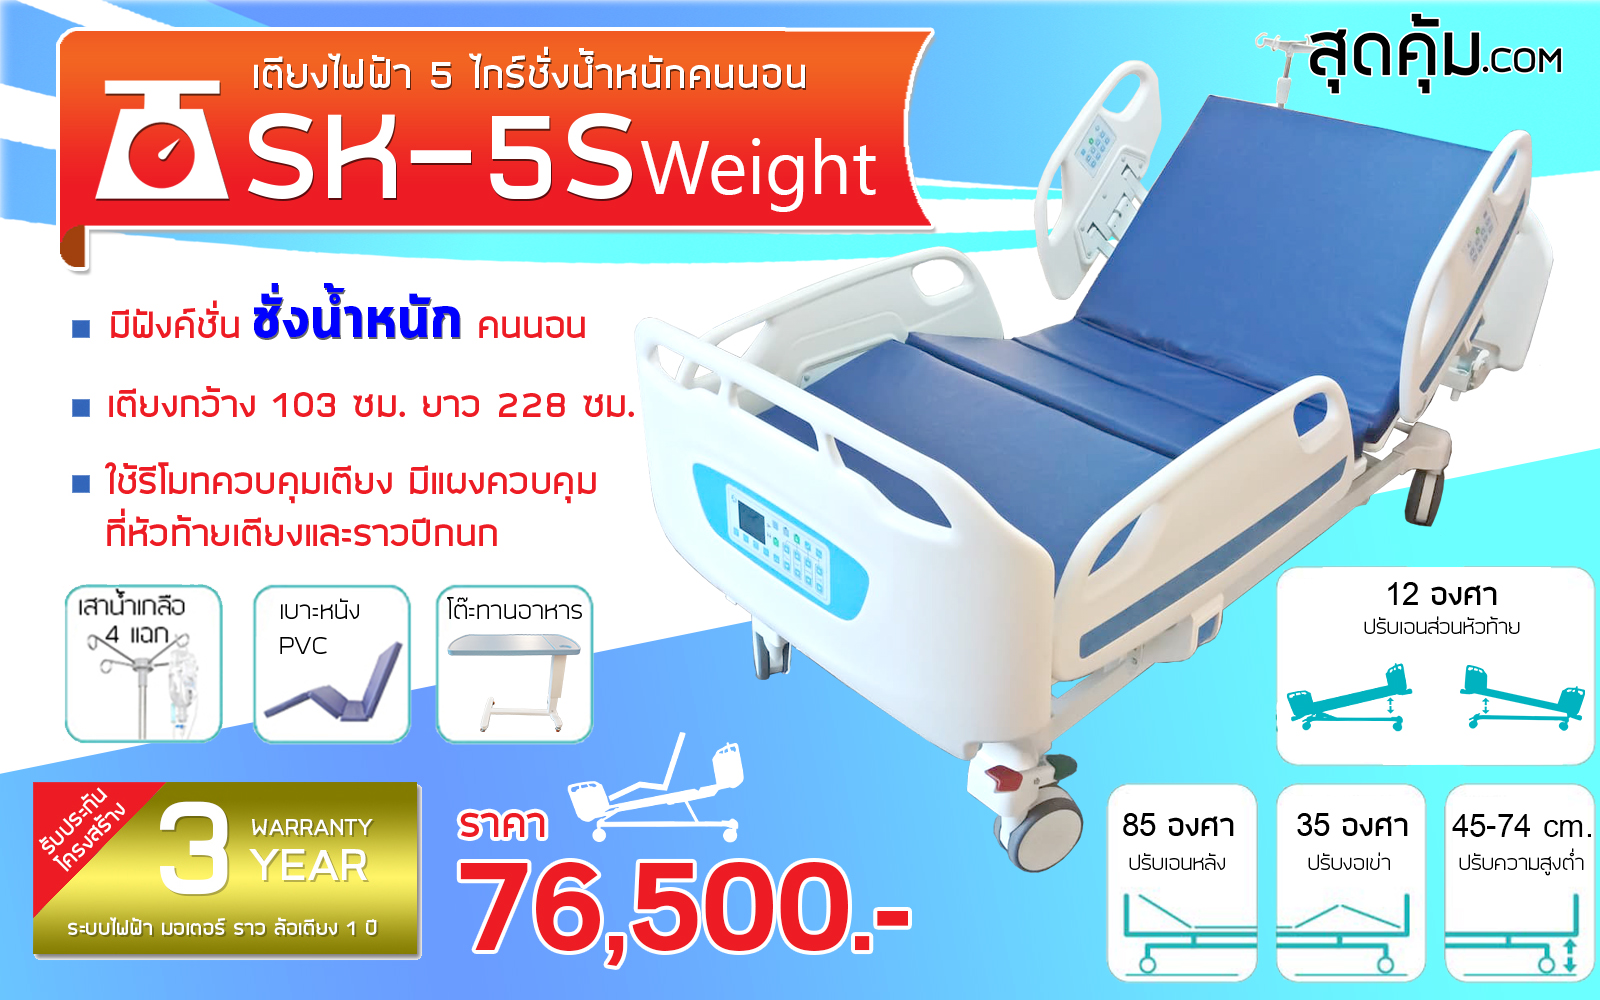 เตียงช่างน้ำหนักผู้ป่วยและคนชราไฟฟ้า 5 ไกร์ ราวปีกนก รุ่น SK-5S Weight